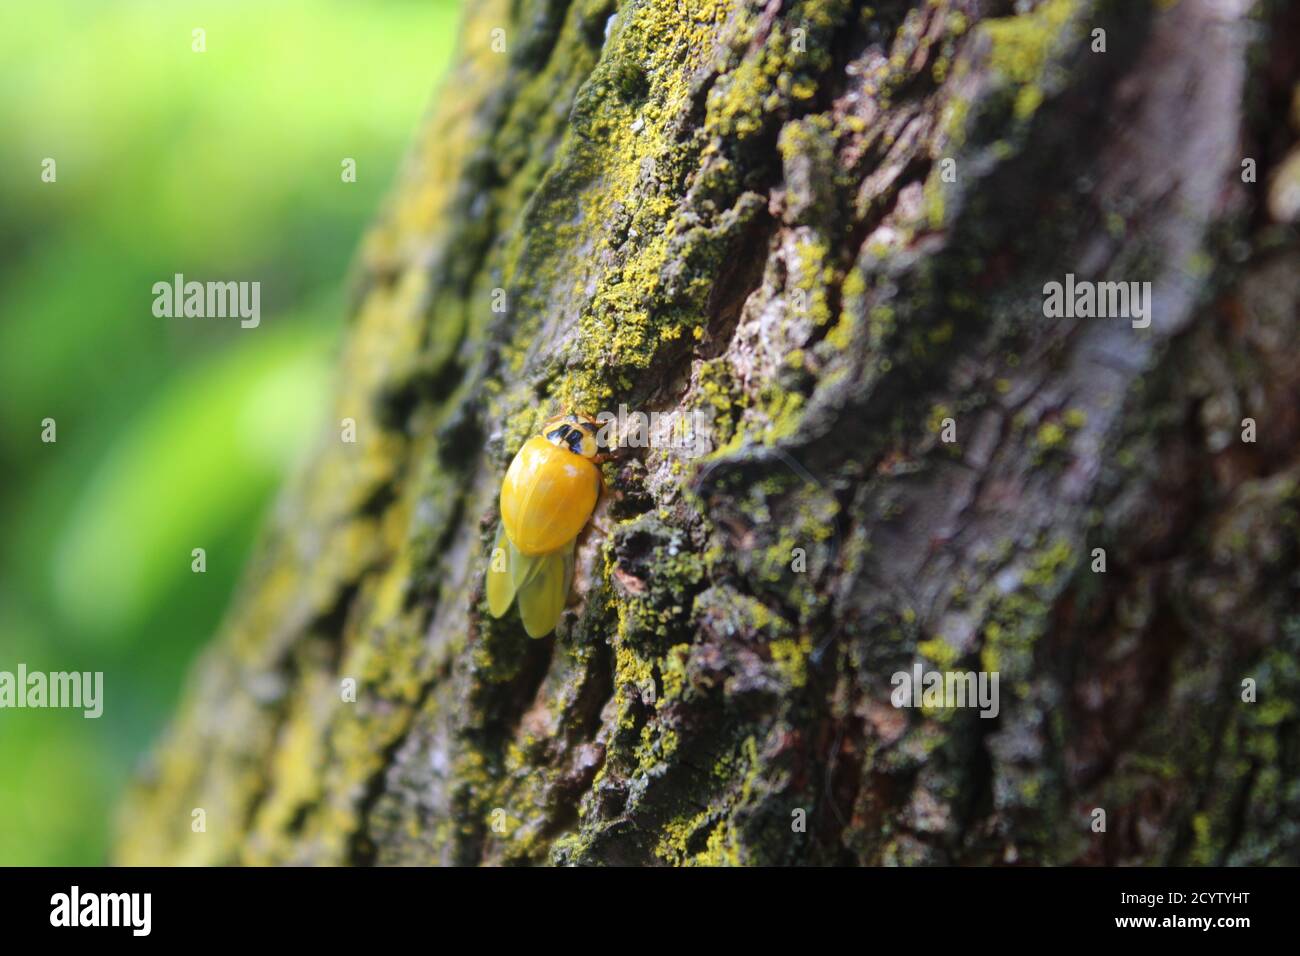 Piccolo ladybug giallo strisciando su un albero Foto Stock